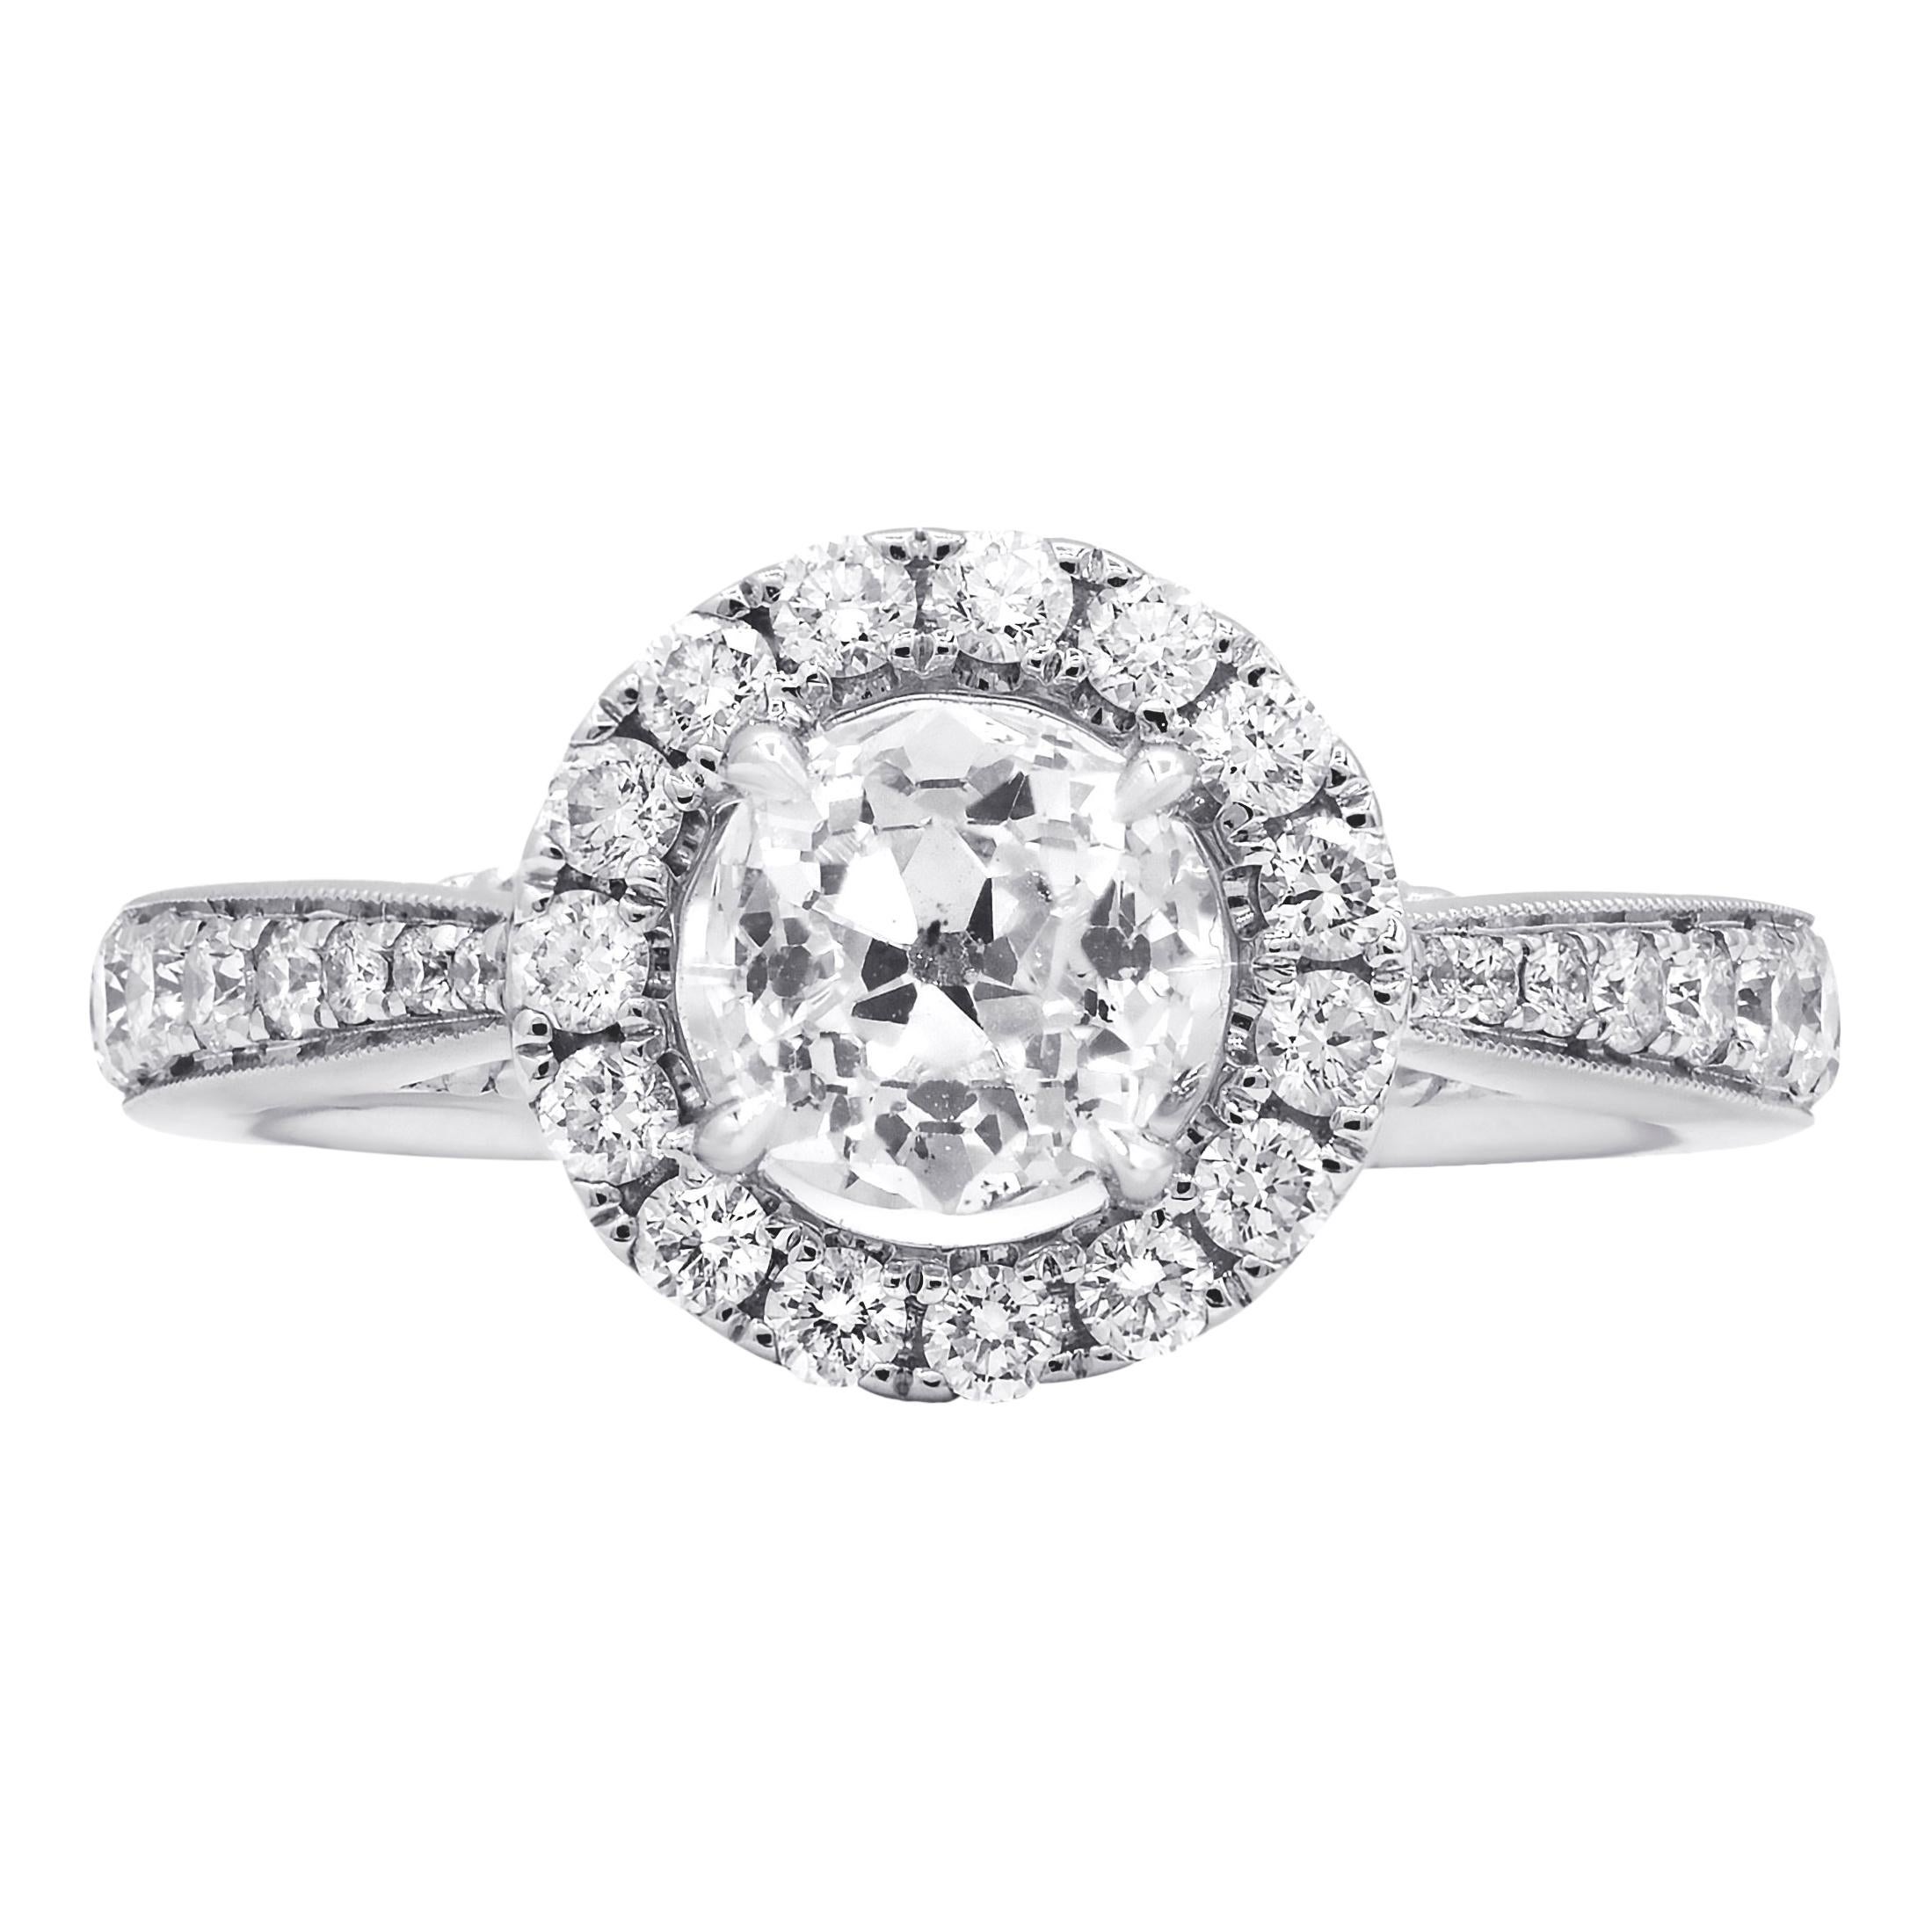 Diana M. Fine Jewelry 18k 1.55 Ct. Tw. Diamond Ring For Sale